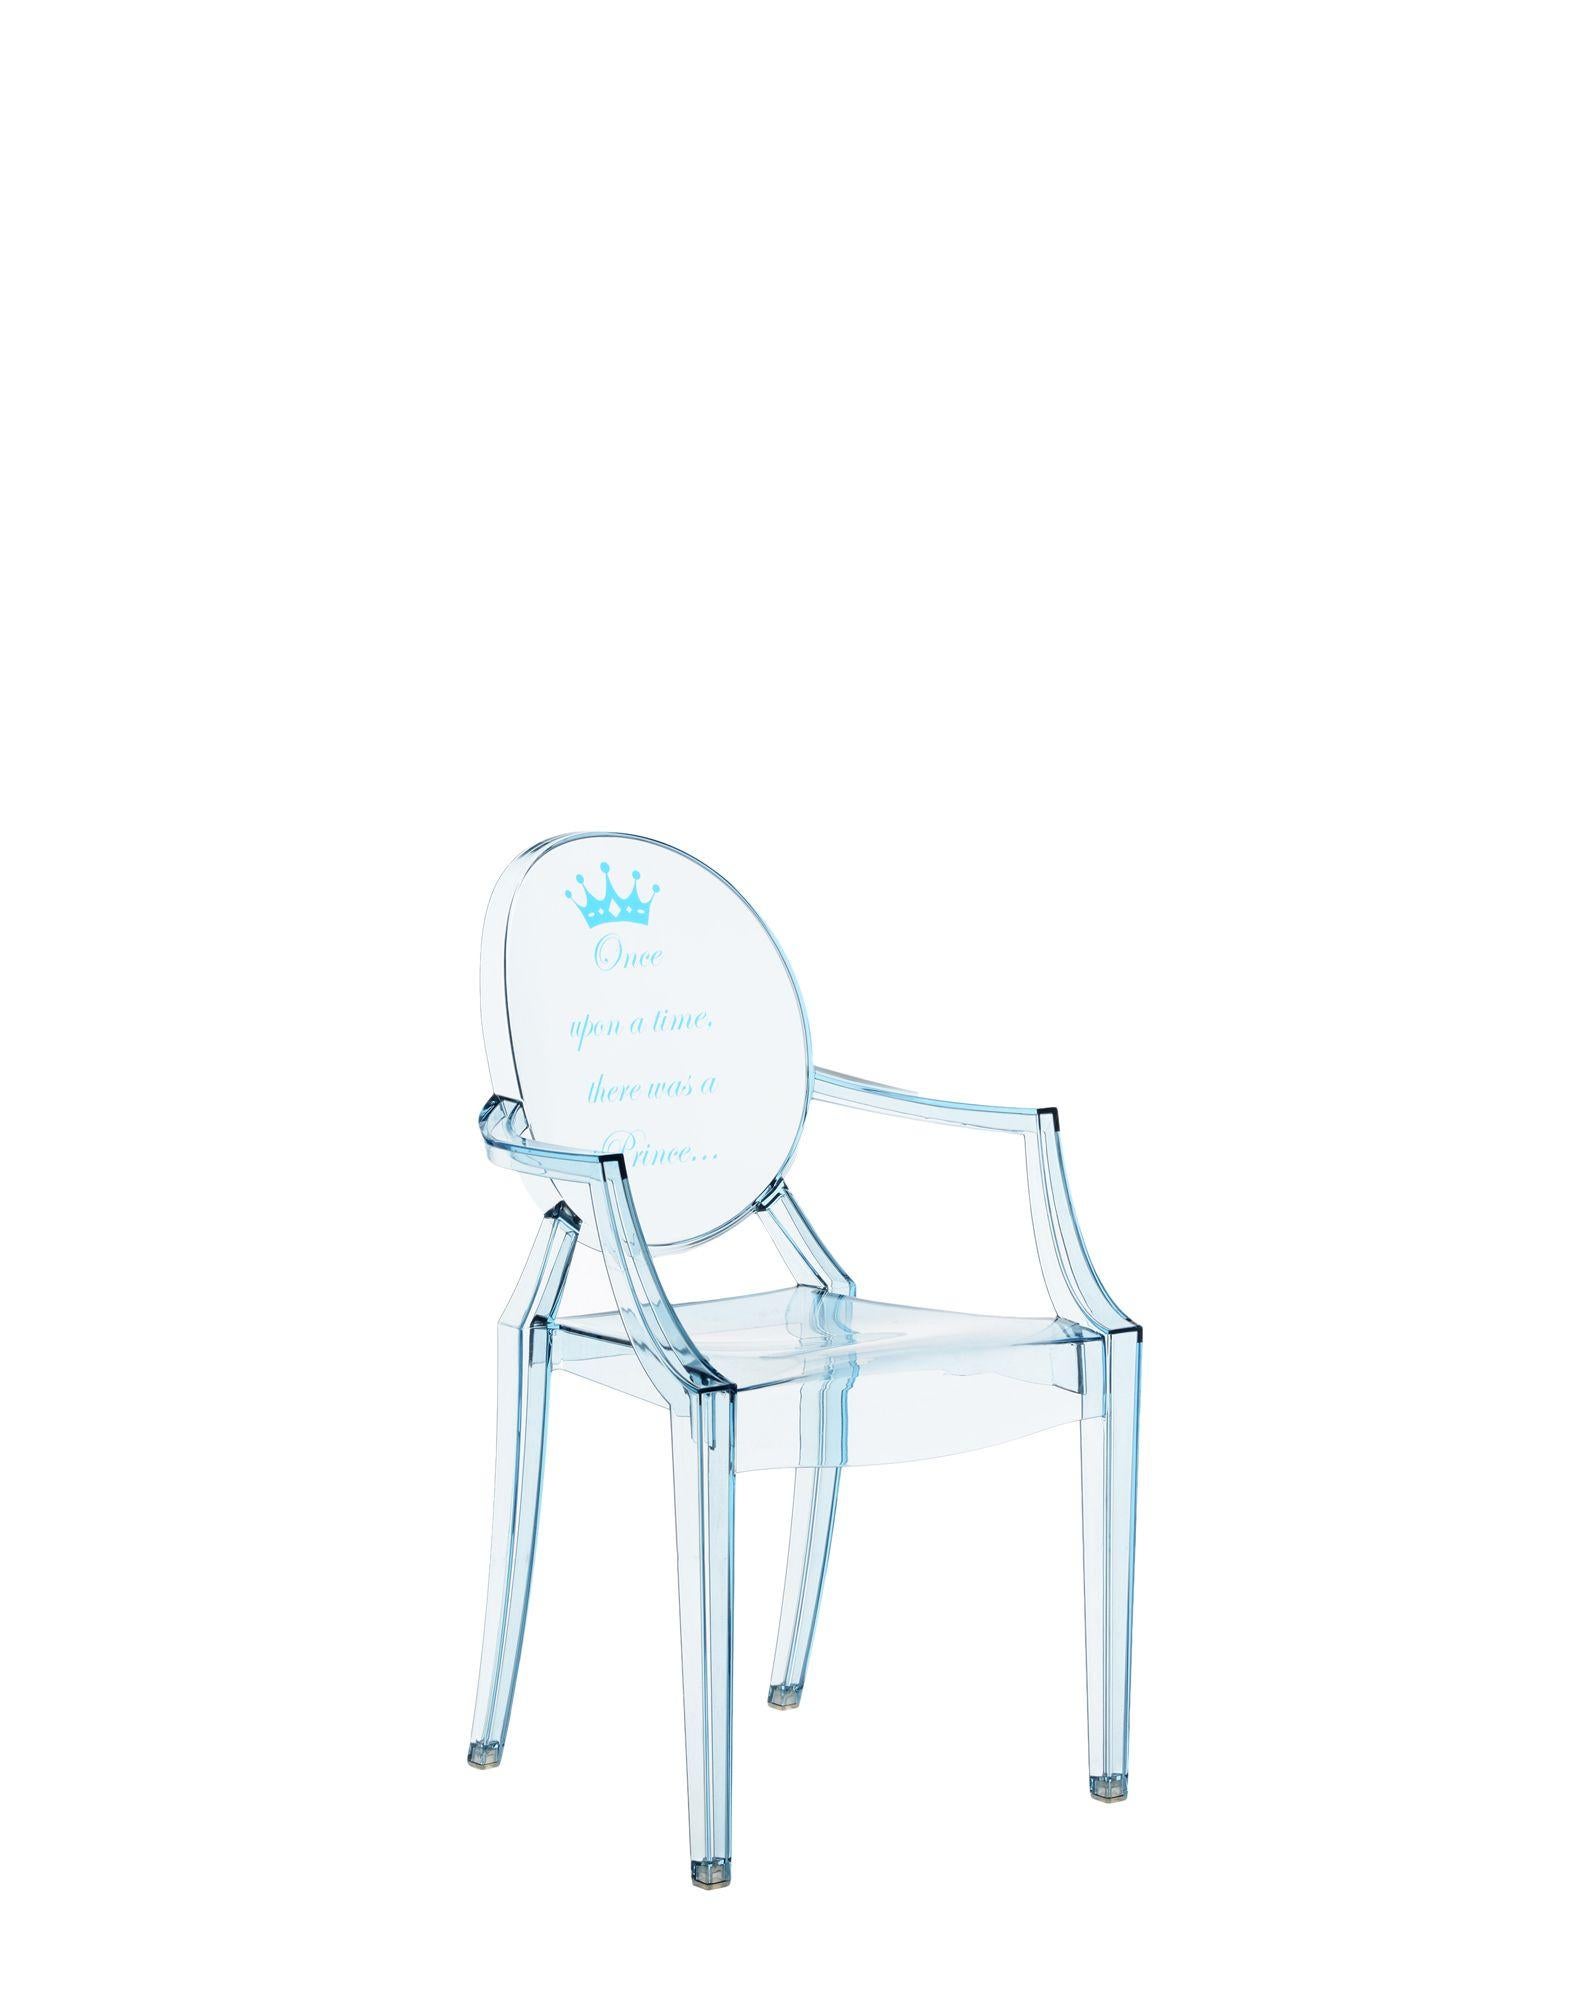 La version miniature de l'une des chaises design les plus célèbres rejoint la ligne Kartell Kids dans plusieurs nouvelles versions. Le Lou Lou Ghost de Philippe Starck reçoit de nouveaux graphismes personnalisables pour le monde amusant des